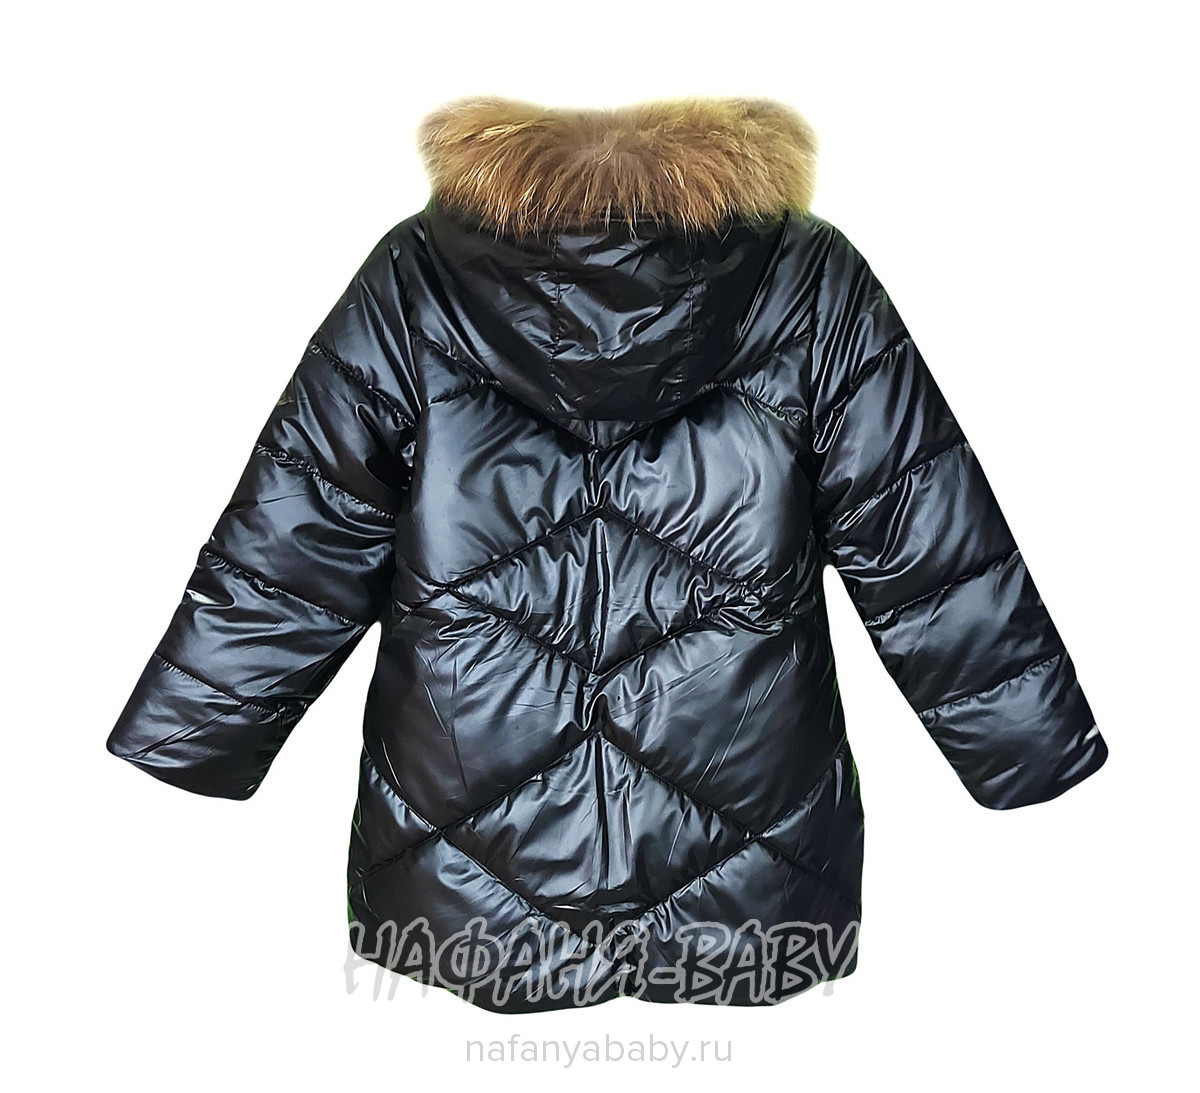 Зимняя удлиненная куртка  YOI LI, купить в интернет магазине Нафаня. арт: 227.